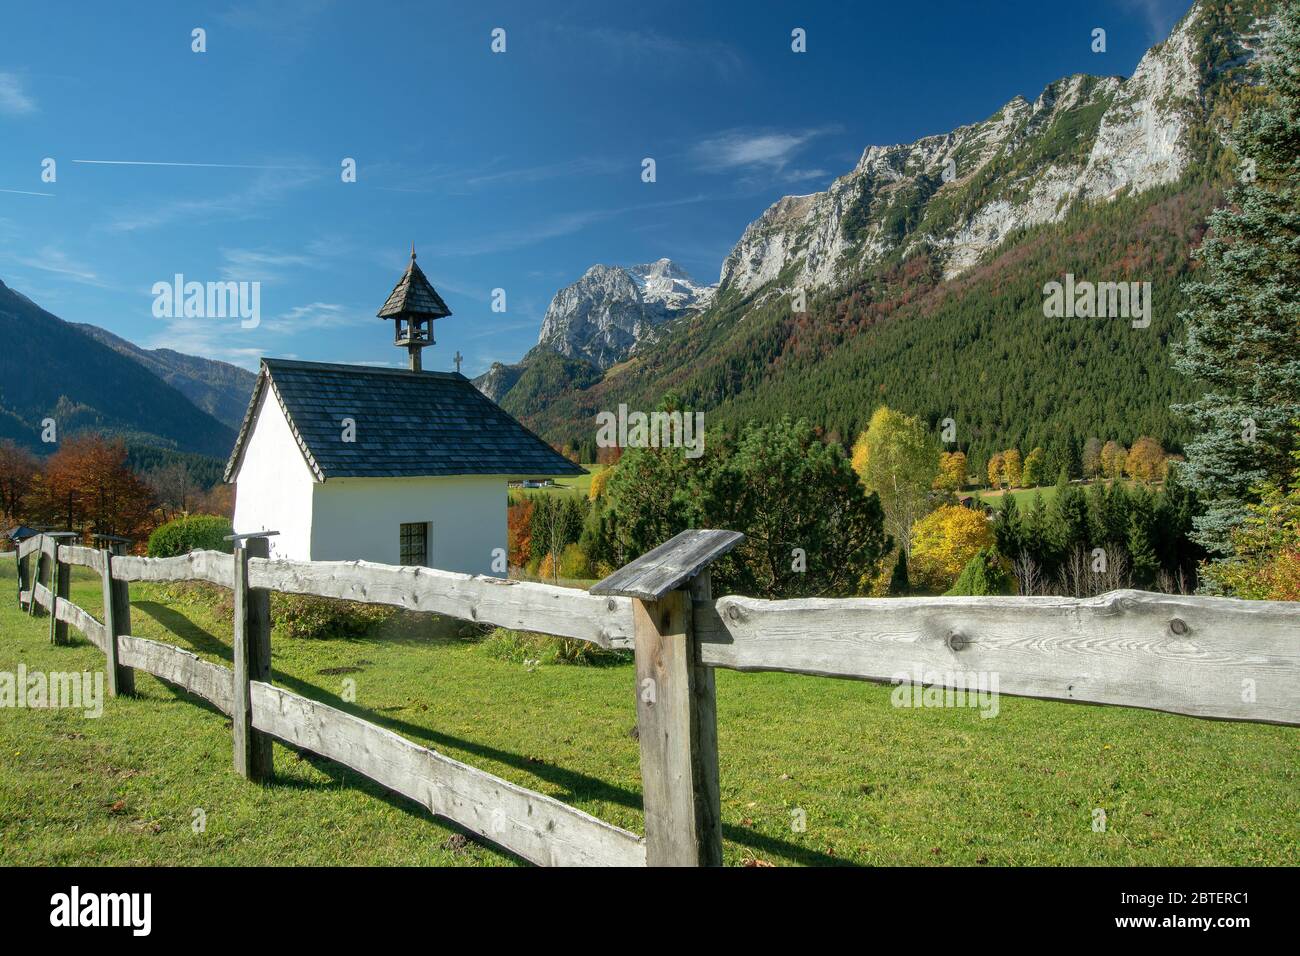 Kapelle in der Nähe des Taubensee in der Gemeinde Ramsau - Berchtesgadener Land - mit der Reiter Alpe im Hintergrund Stock Photo